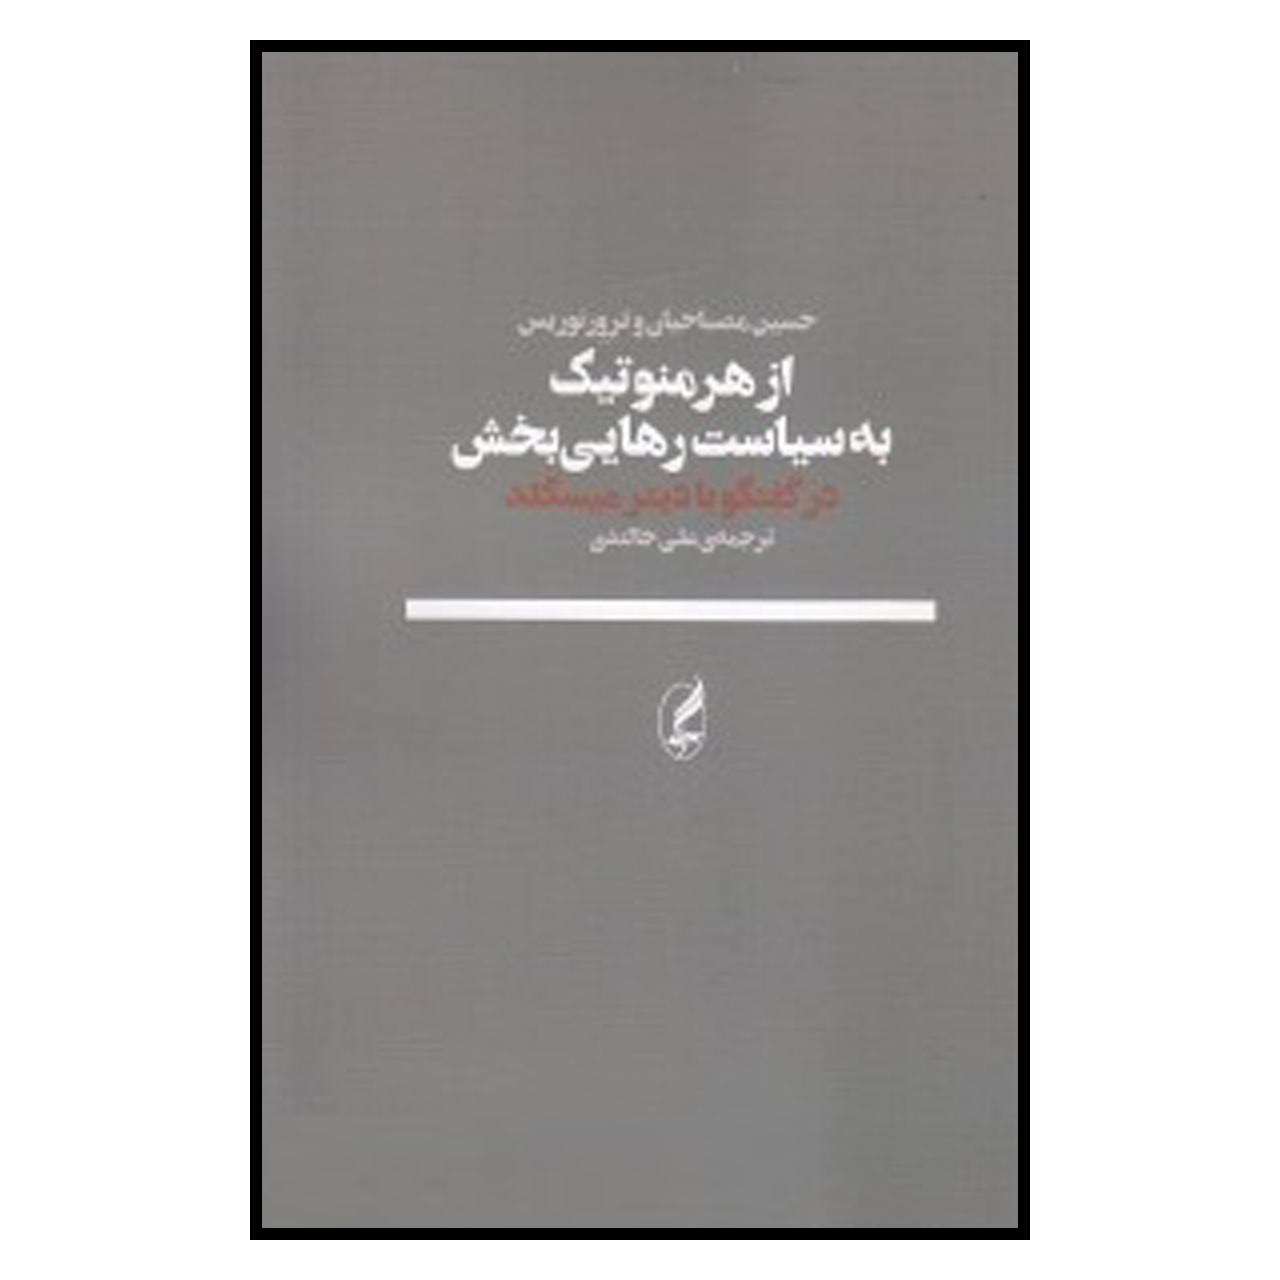 کتاب از هرمنوتیک به سیاست رهایی بخش اثر حسین مصباحیان و ترور نوریس انتشارات آگه 